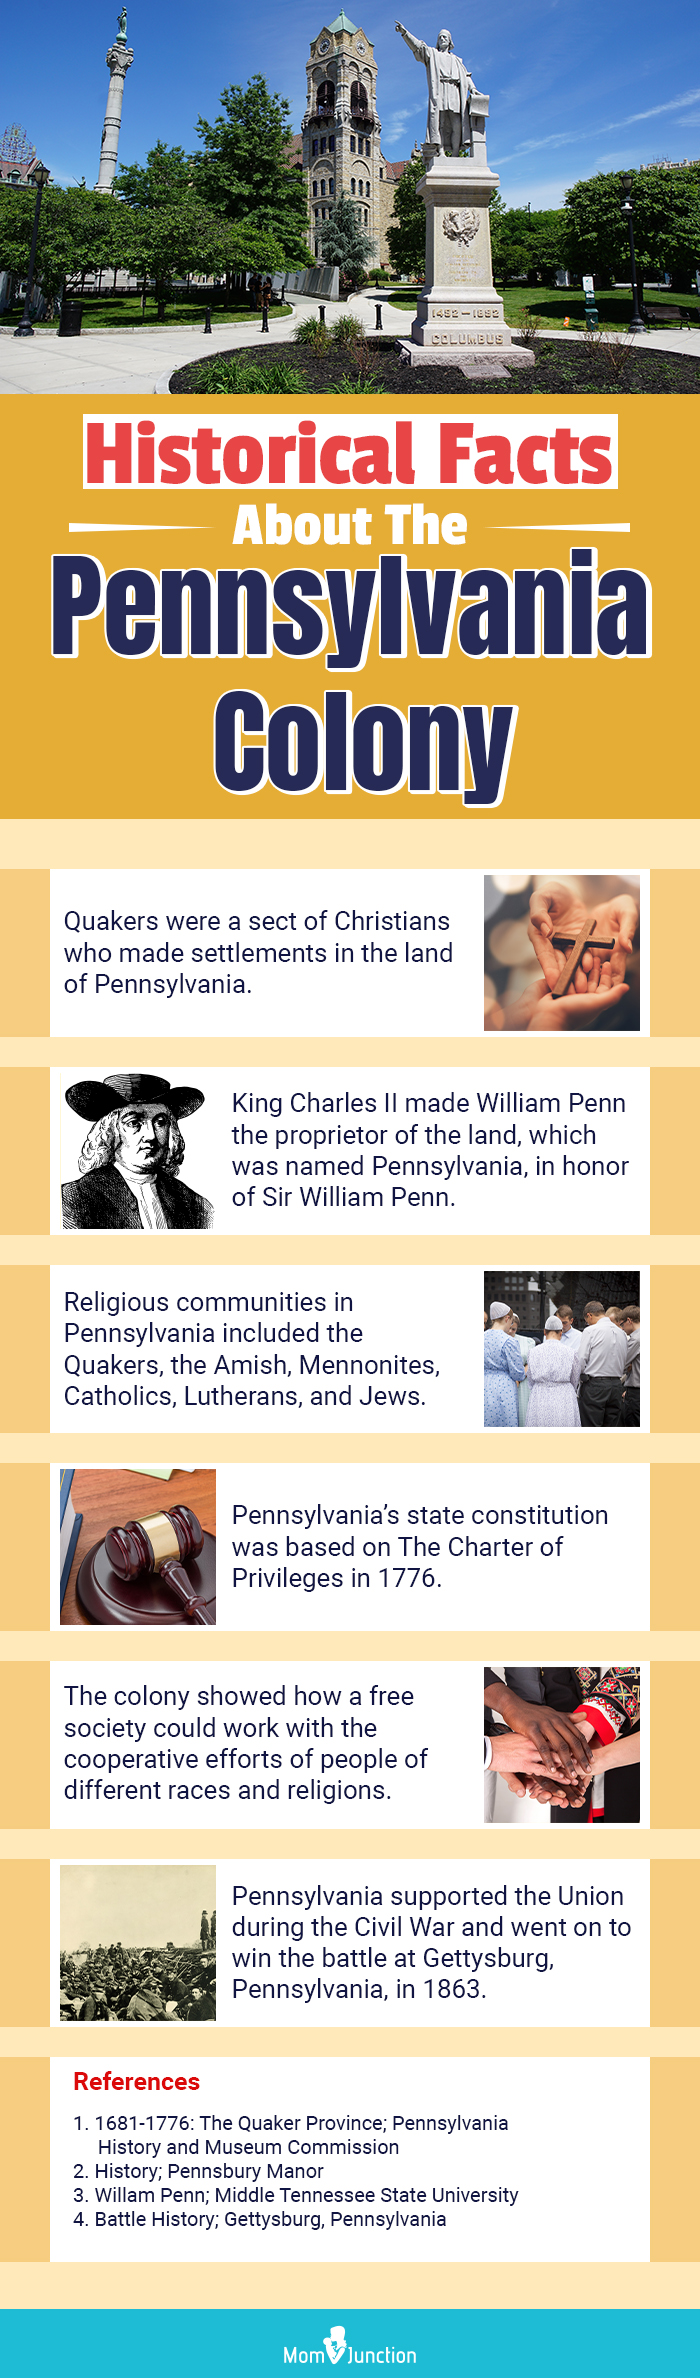 关于宾夕法尼亚殖民地儿童的历史事实(信息图)